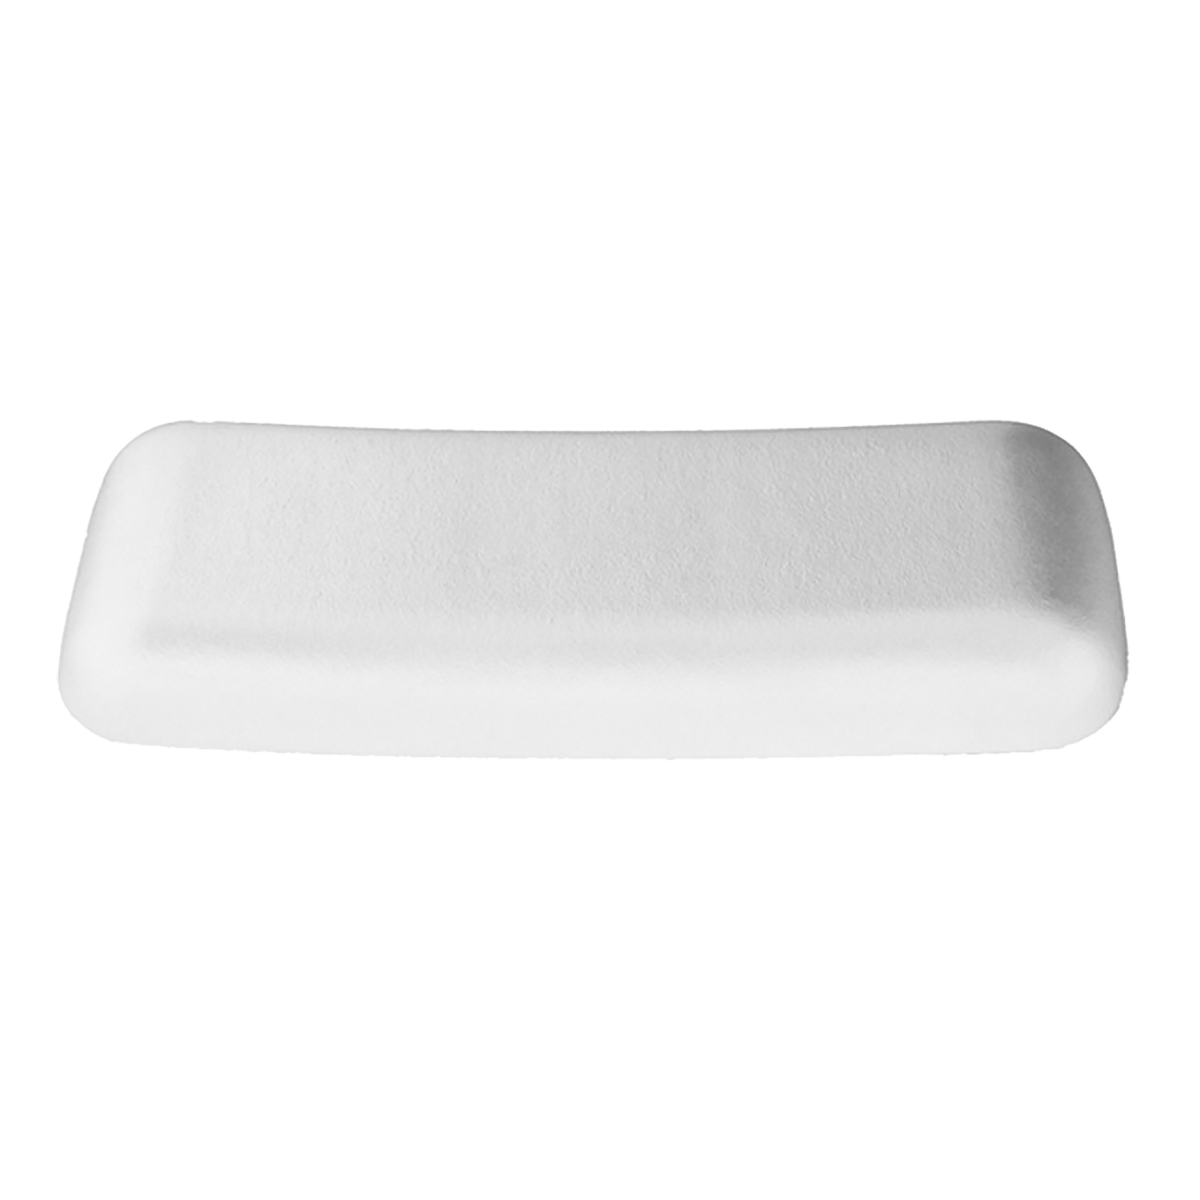 підголовник білий для ванни Bette B57-0211